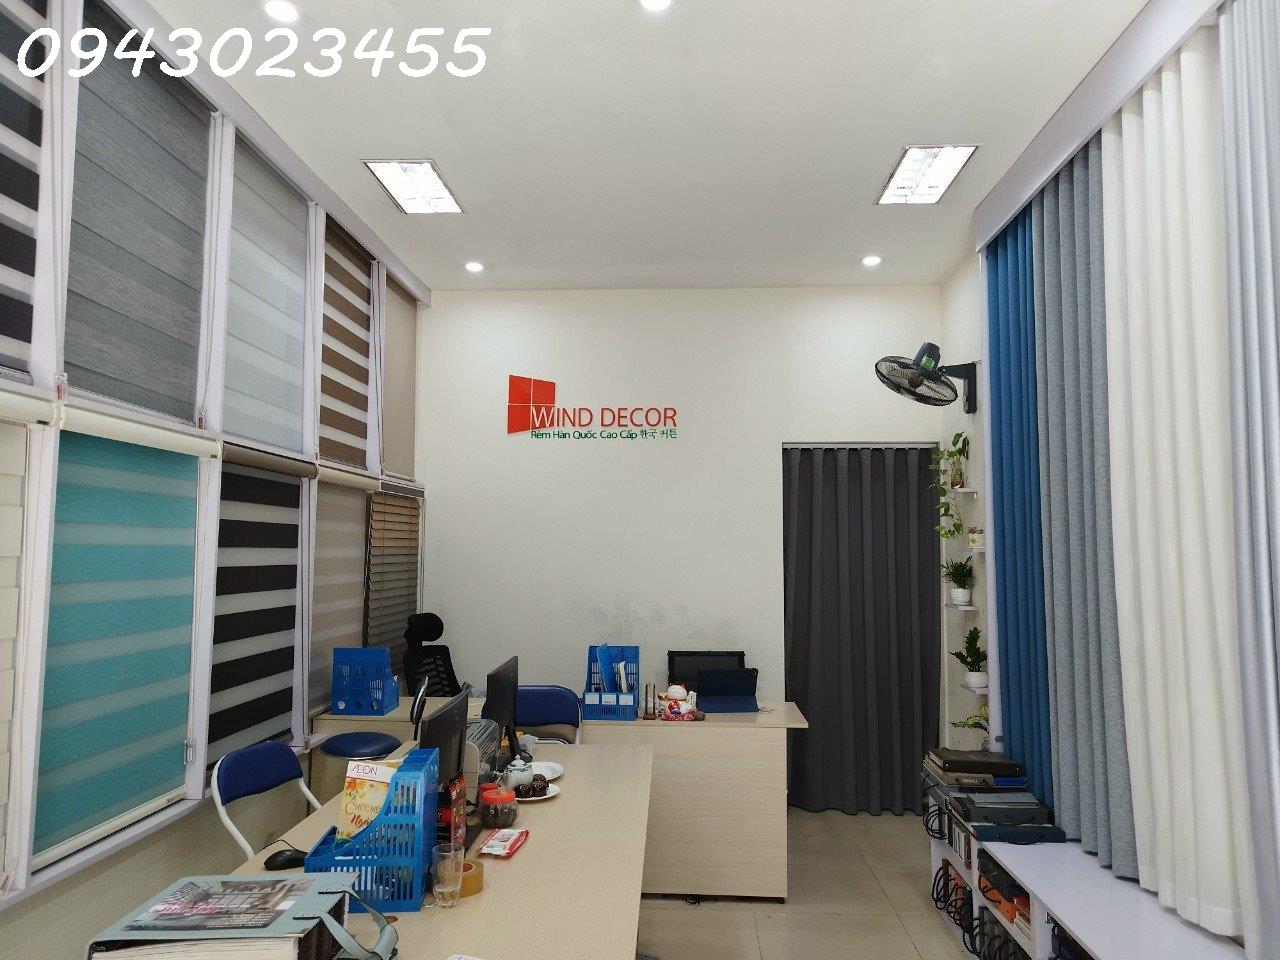 Chính chủ cho thuê tầng 1 mặt bằng kinh doanh, văn phòng, bán hàng online tại số 122 A Quang 3